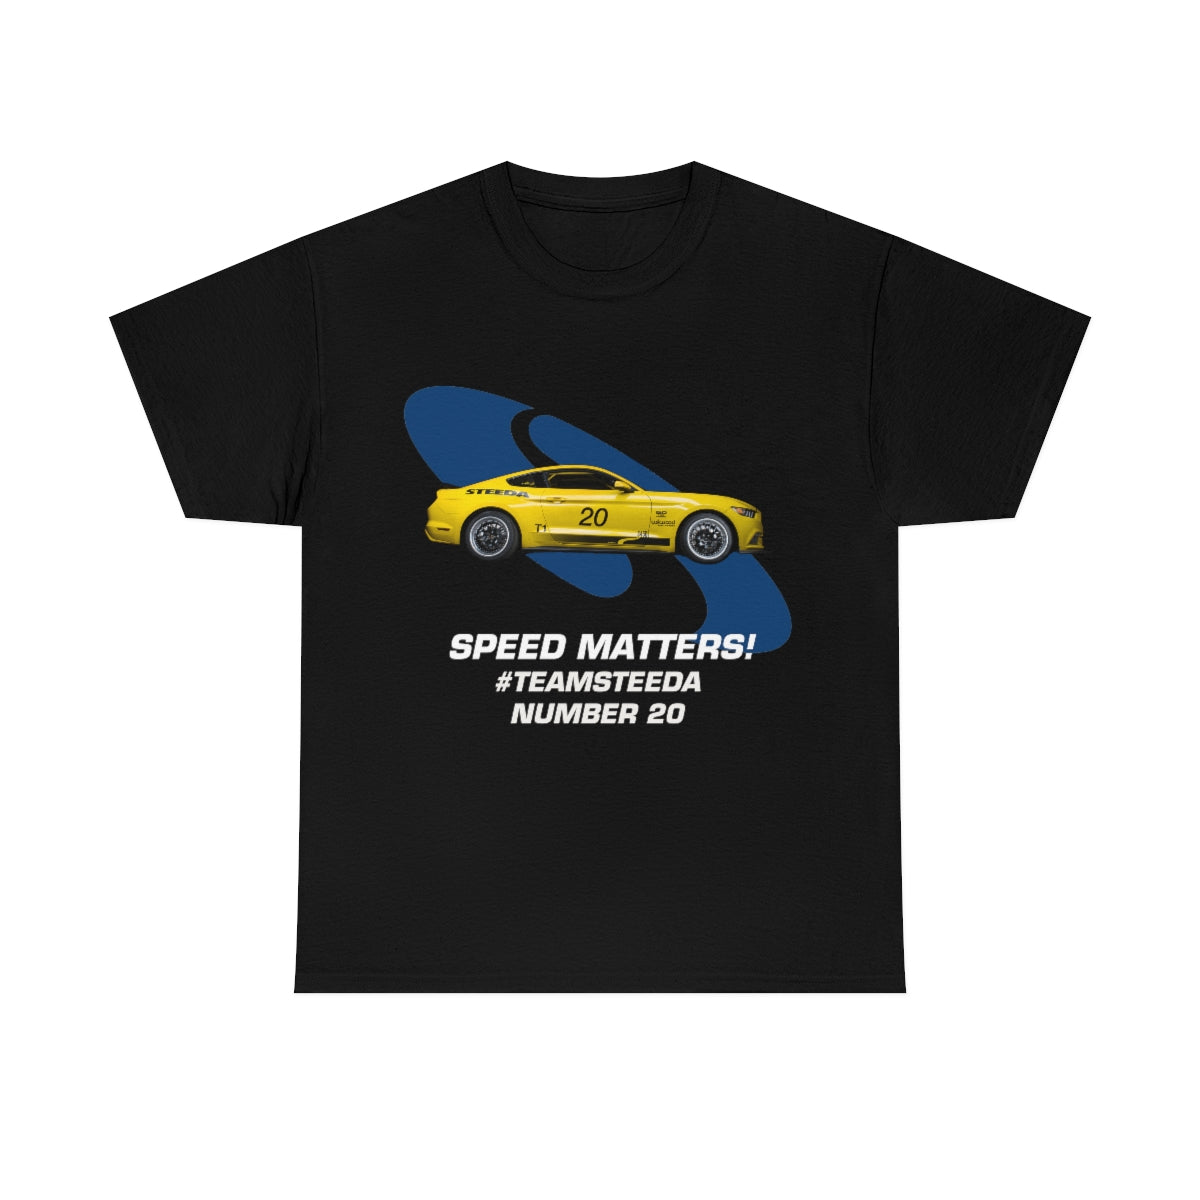 Steeda "Team Steeda" Numéro 20 - T-shirt en coton noir